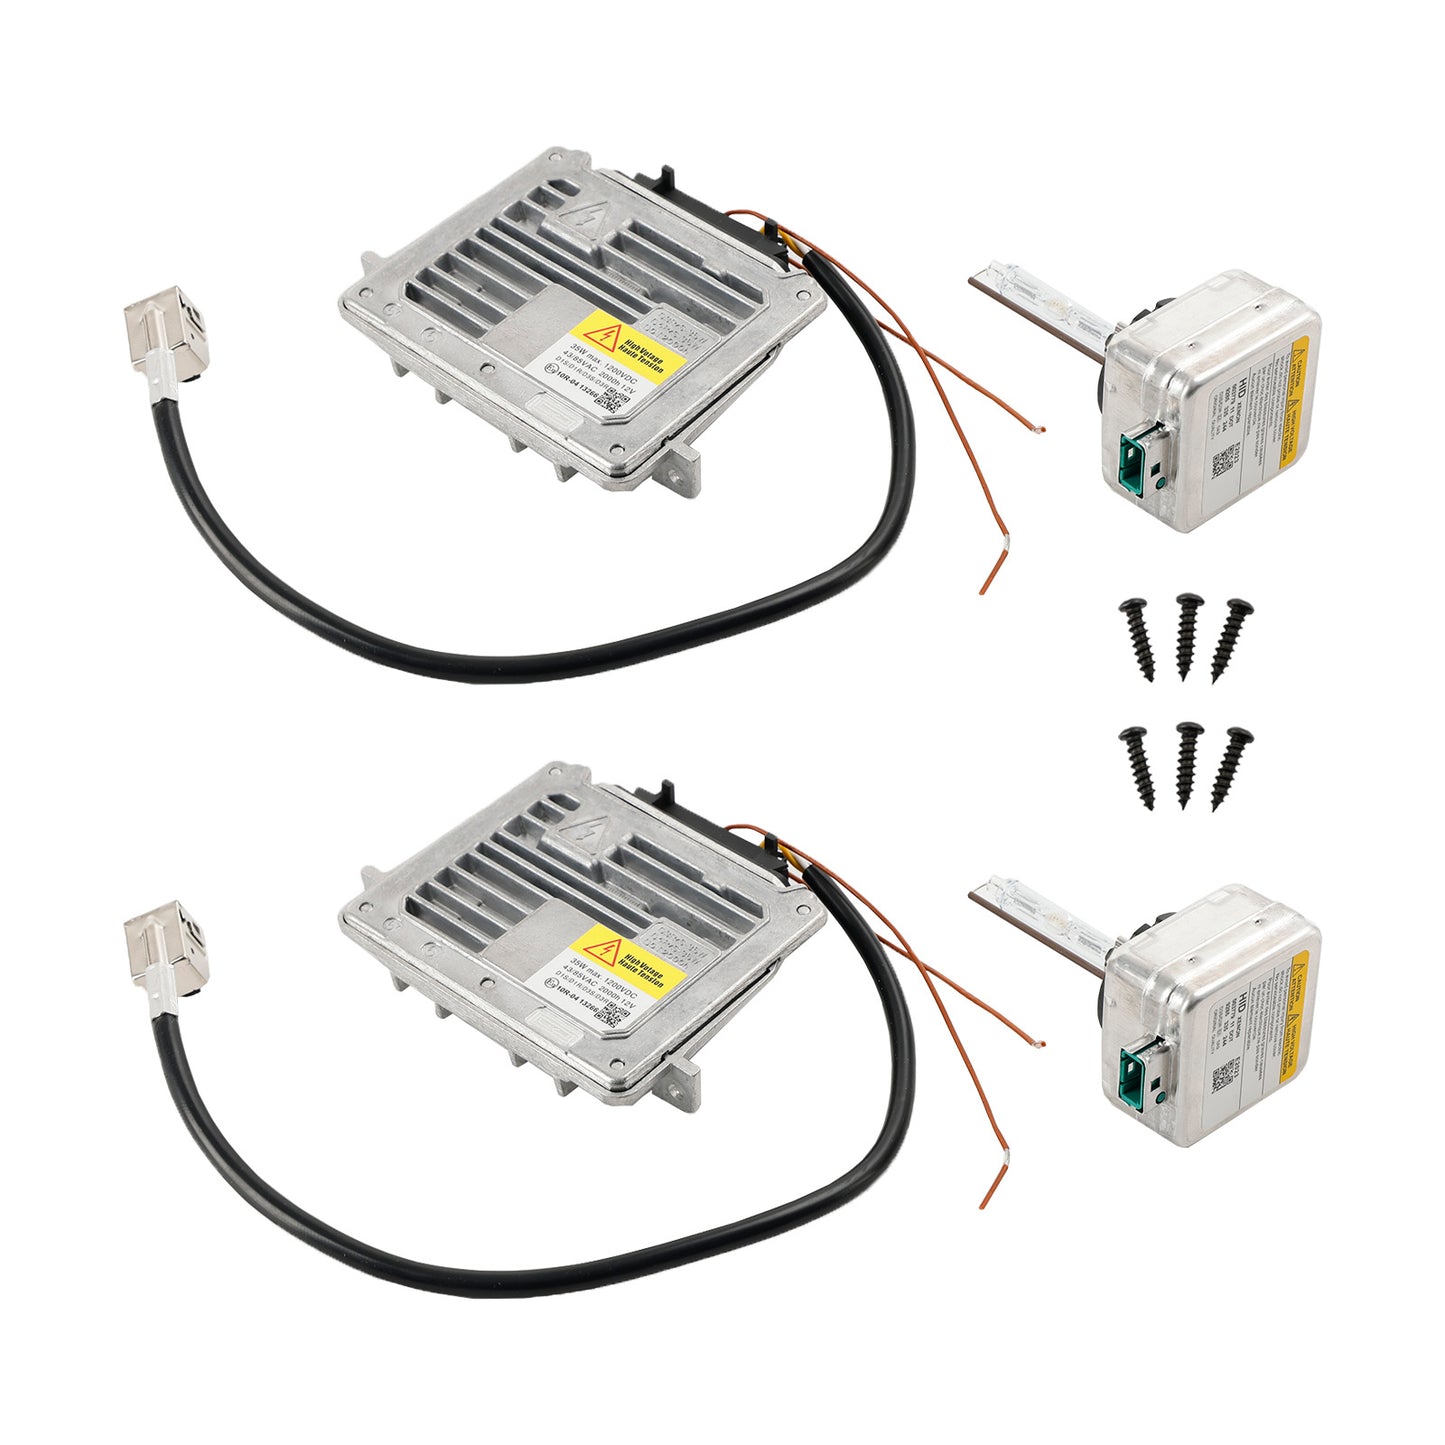 2x Headlight Ballast & D3S Bulb Wire Control Unit For Grand Cherokee 2014-2020